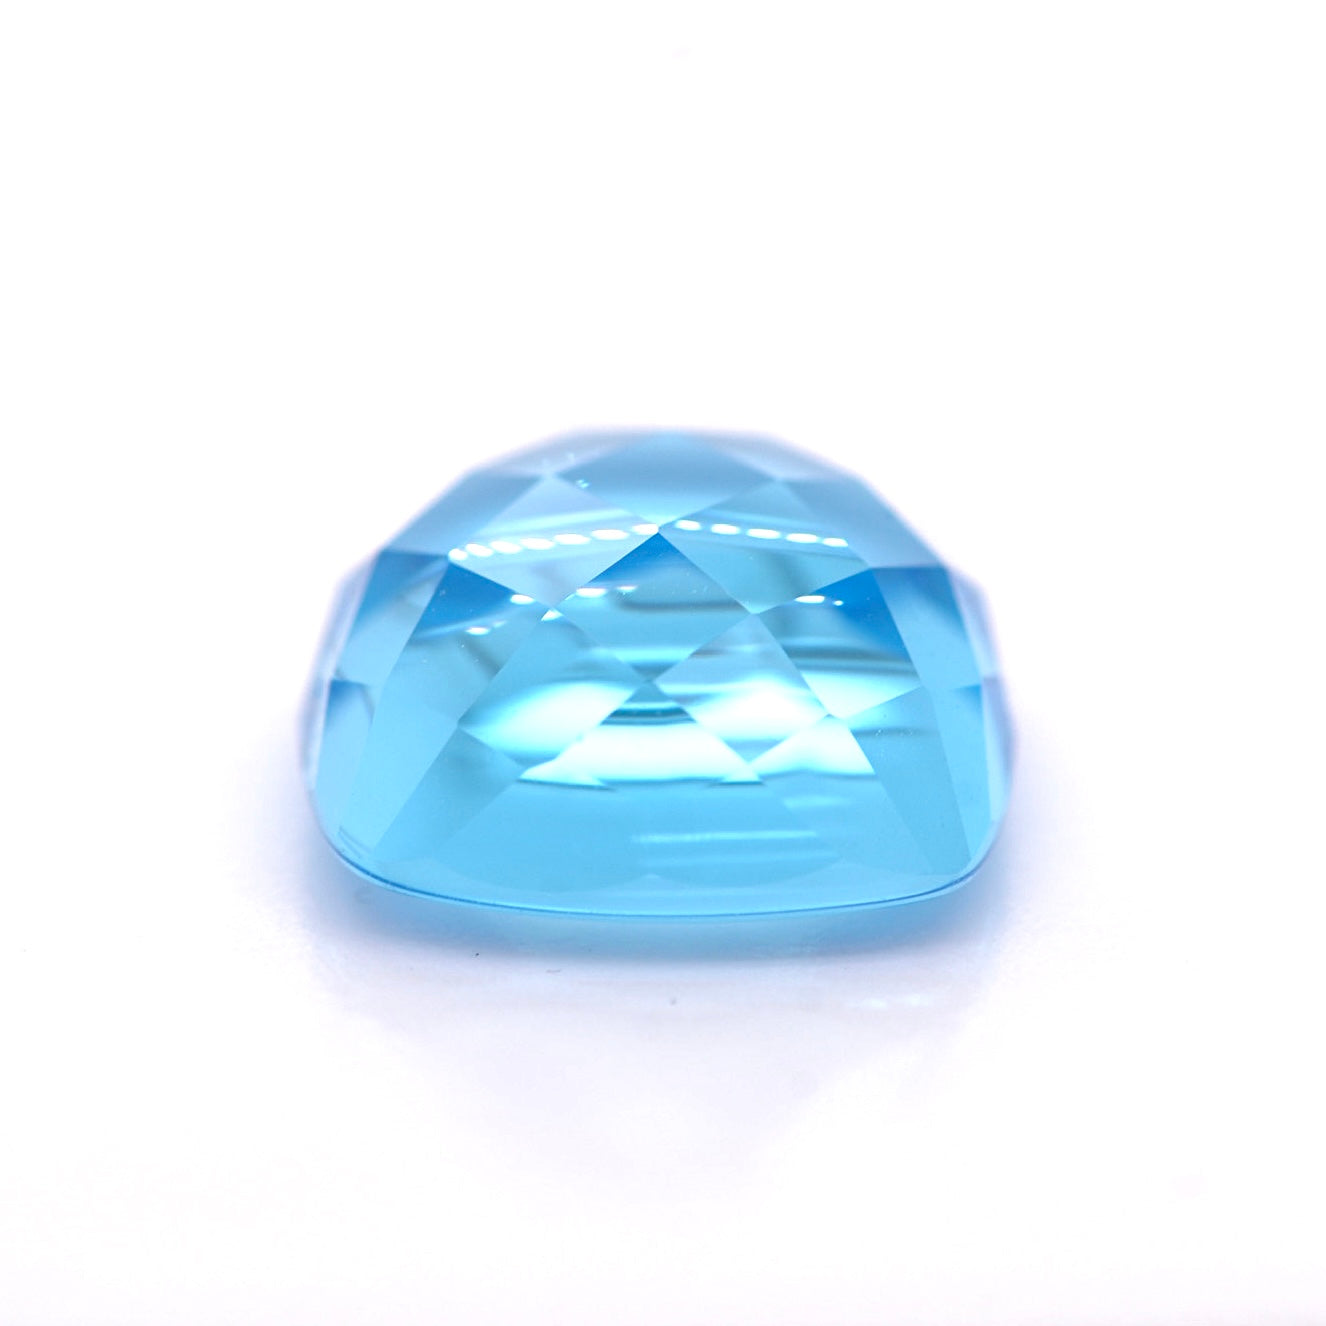 Topaz Swiss Blue gemstone jewelry cushion cut